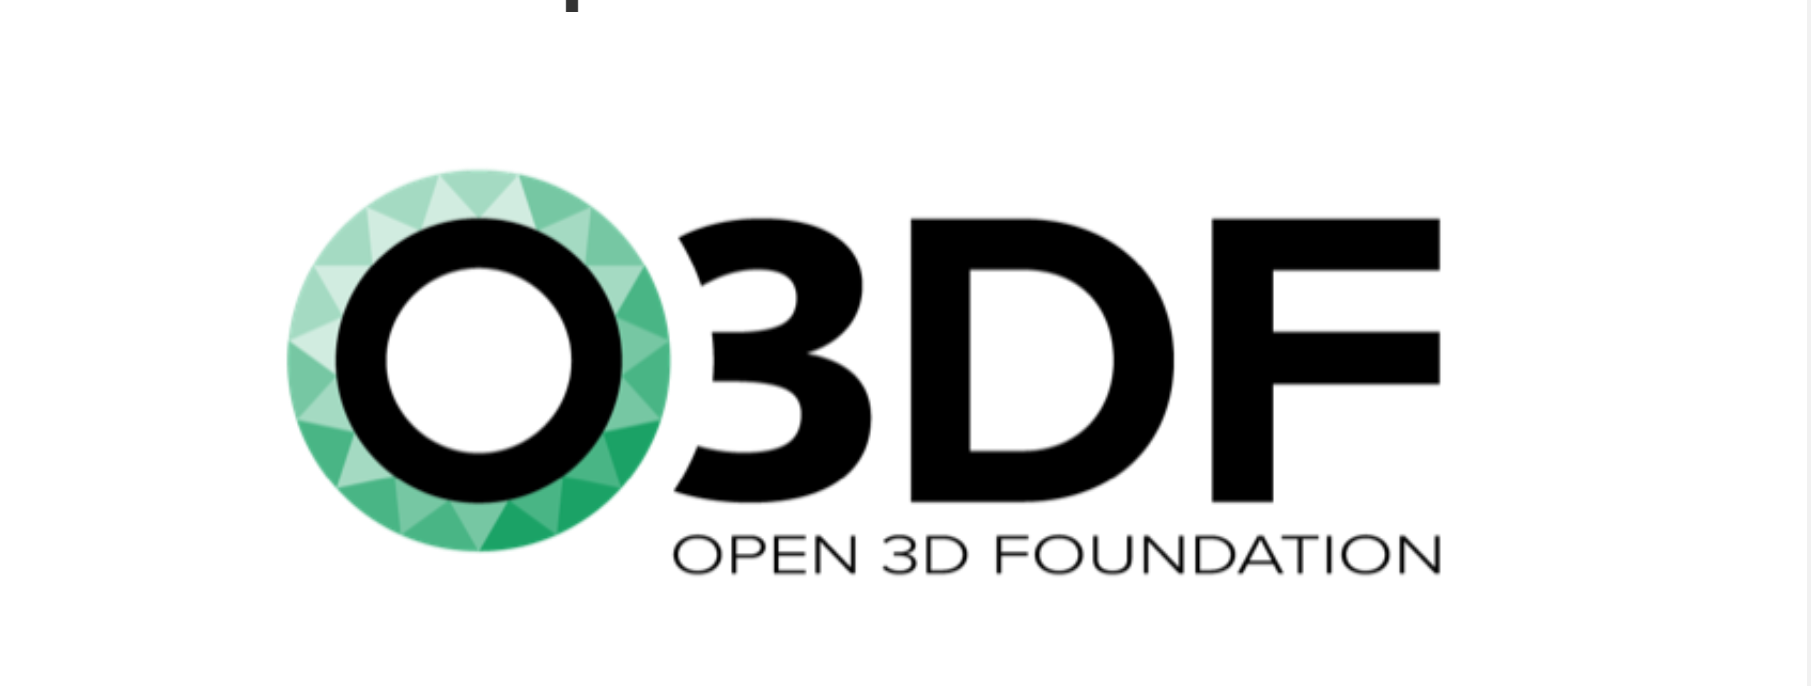 Microsoft si è unita alla Open 3D Foundation